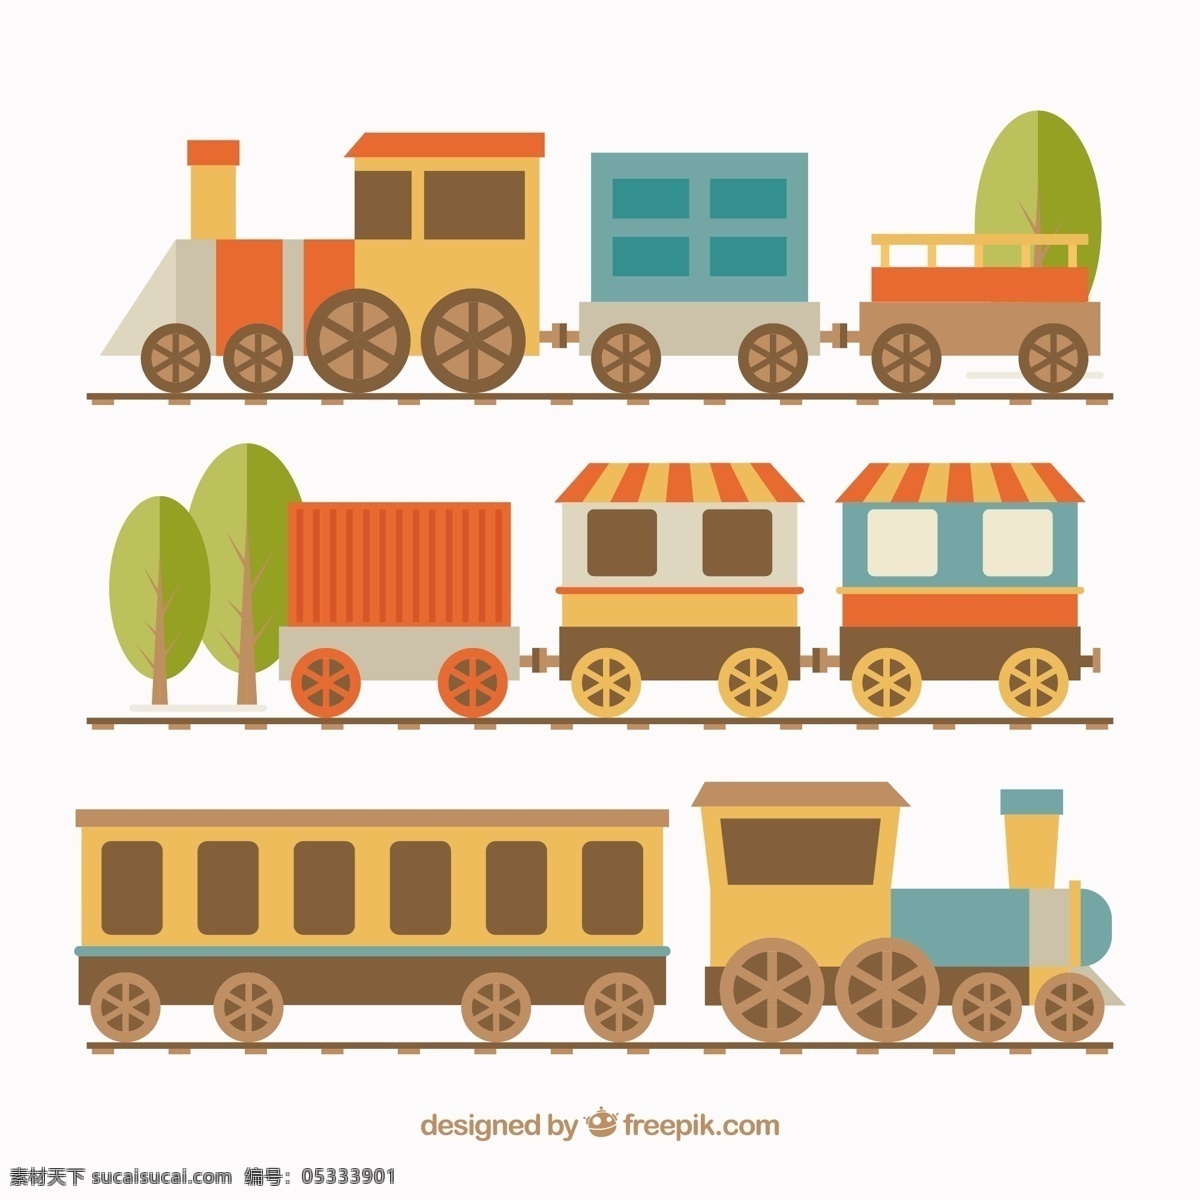 卡通 风格 货车 机车 矢量 设计素材 几个 卡通风格